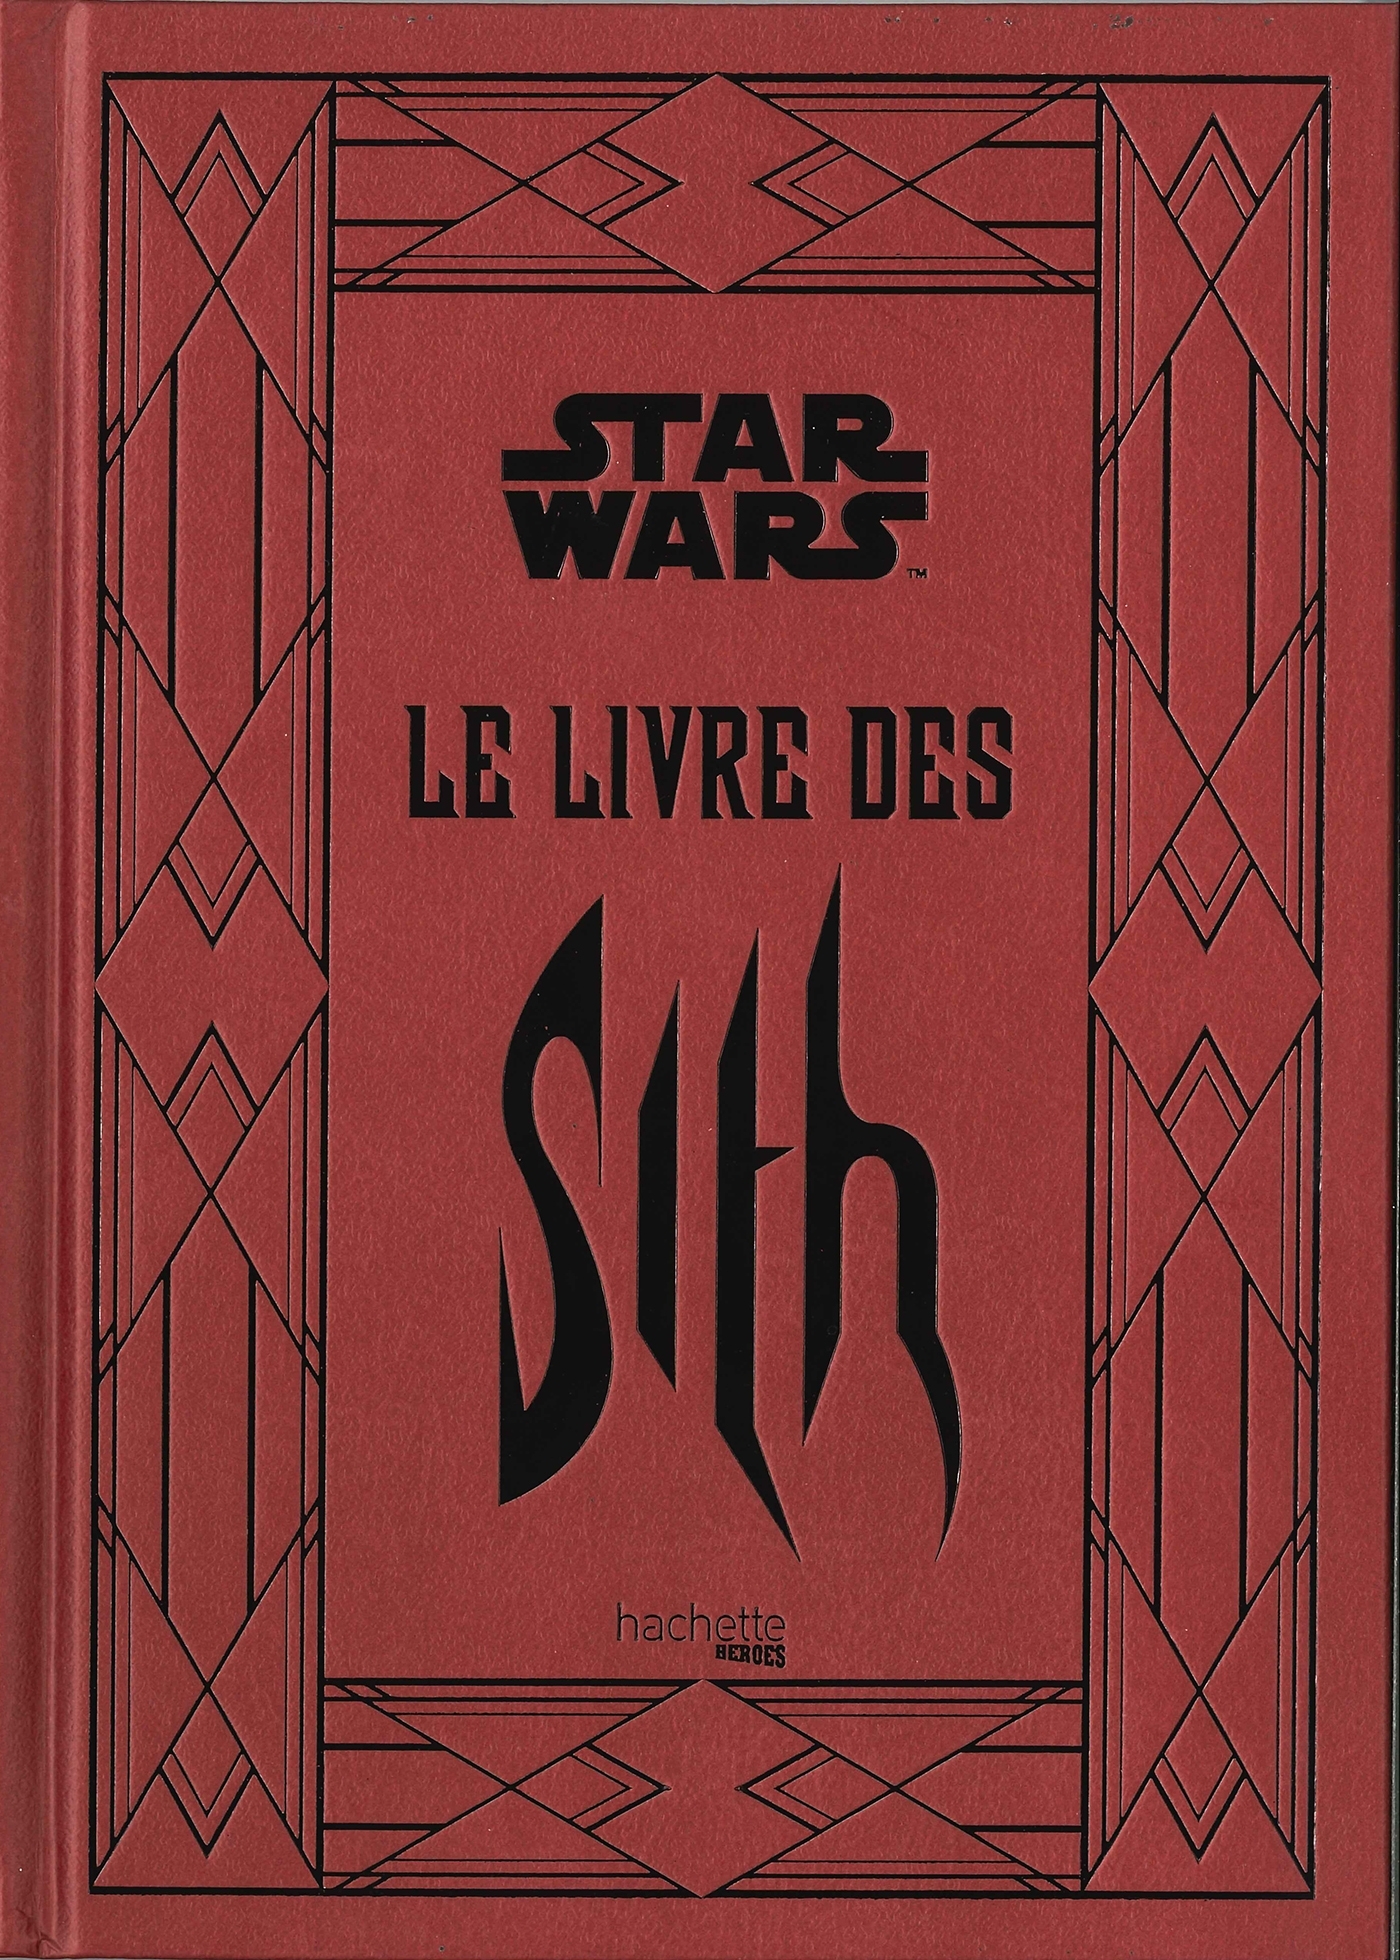 Le Livre des Sith (9782017076605-front-cover)